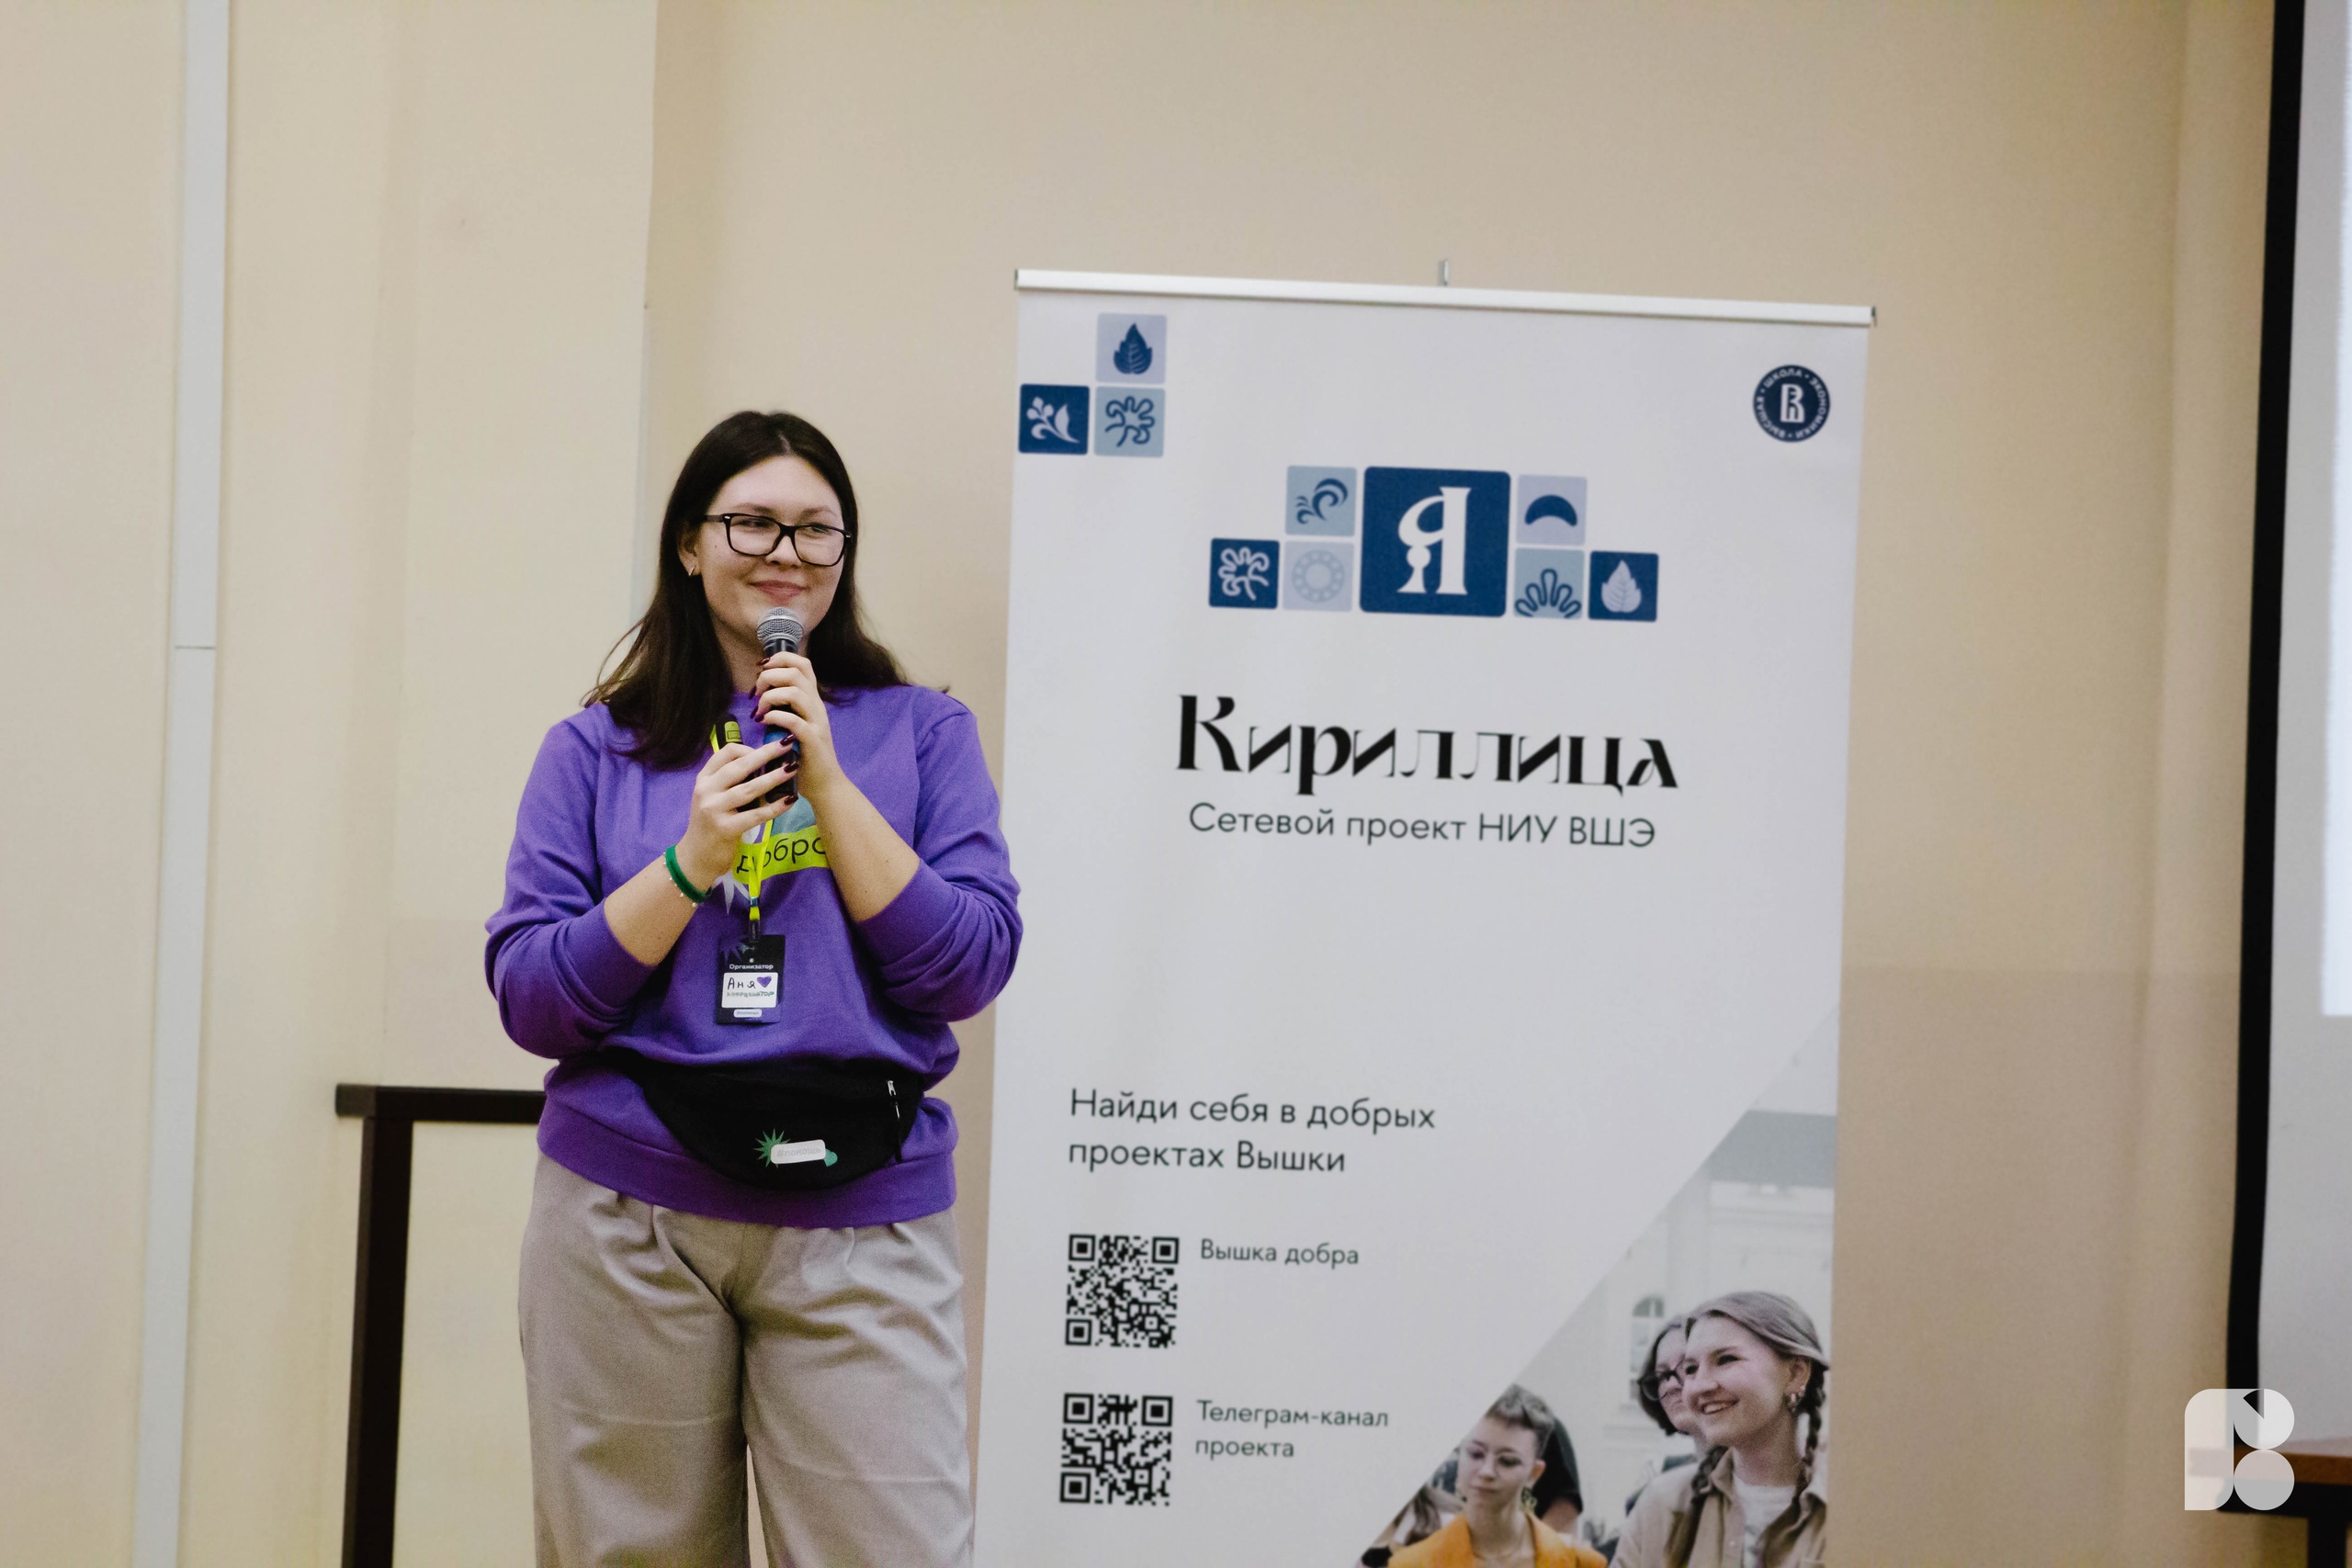 Аня Мартыненко, координатор Школы Волонтёра, на открытии проекта